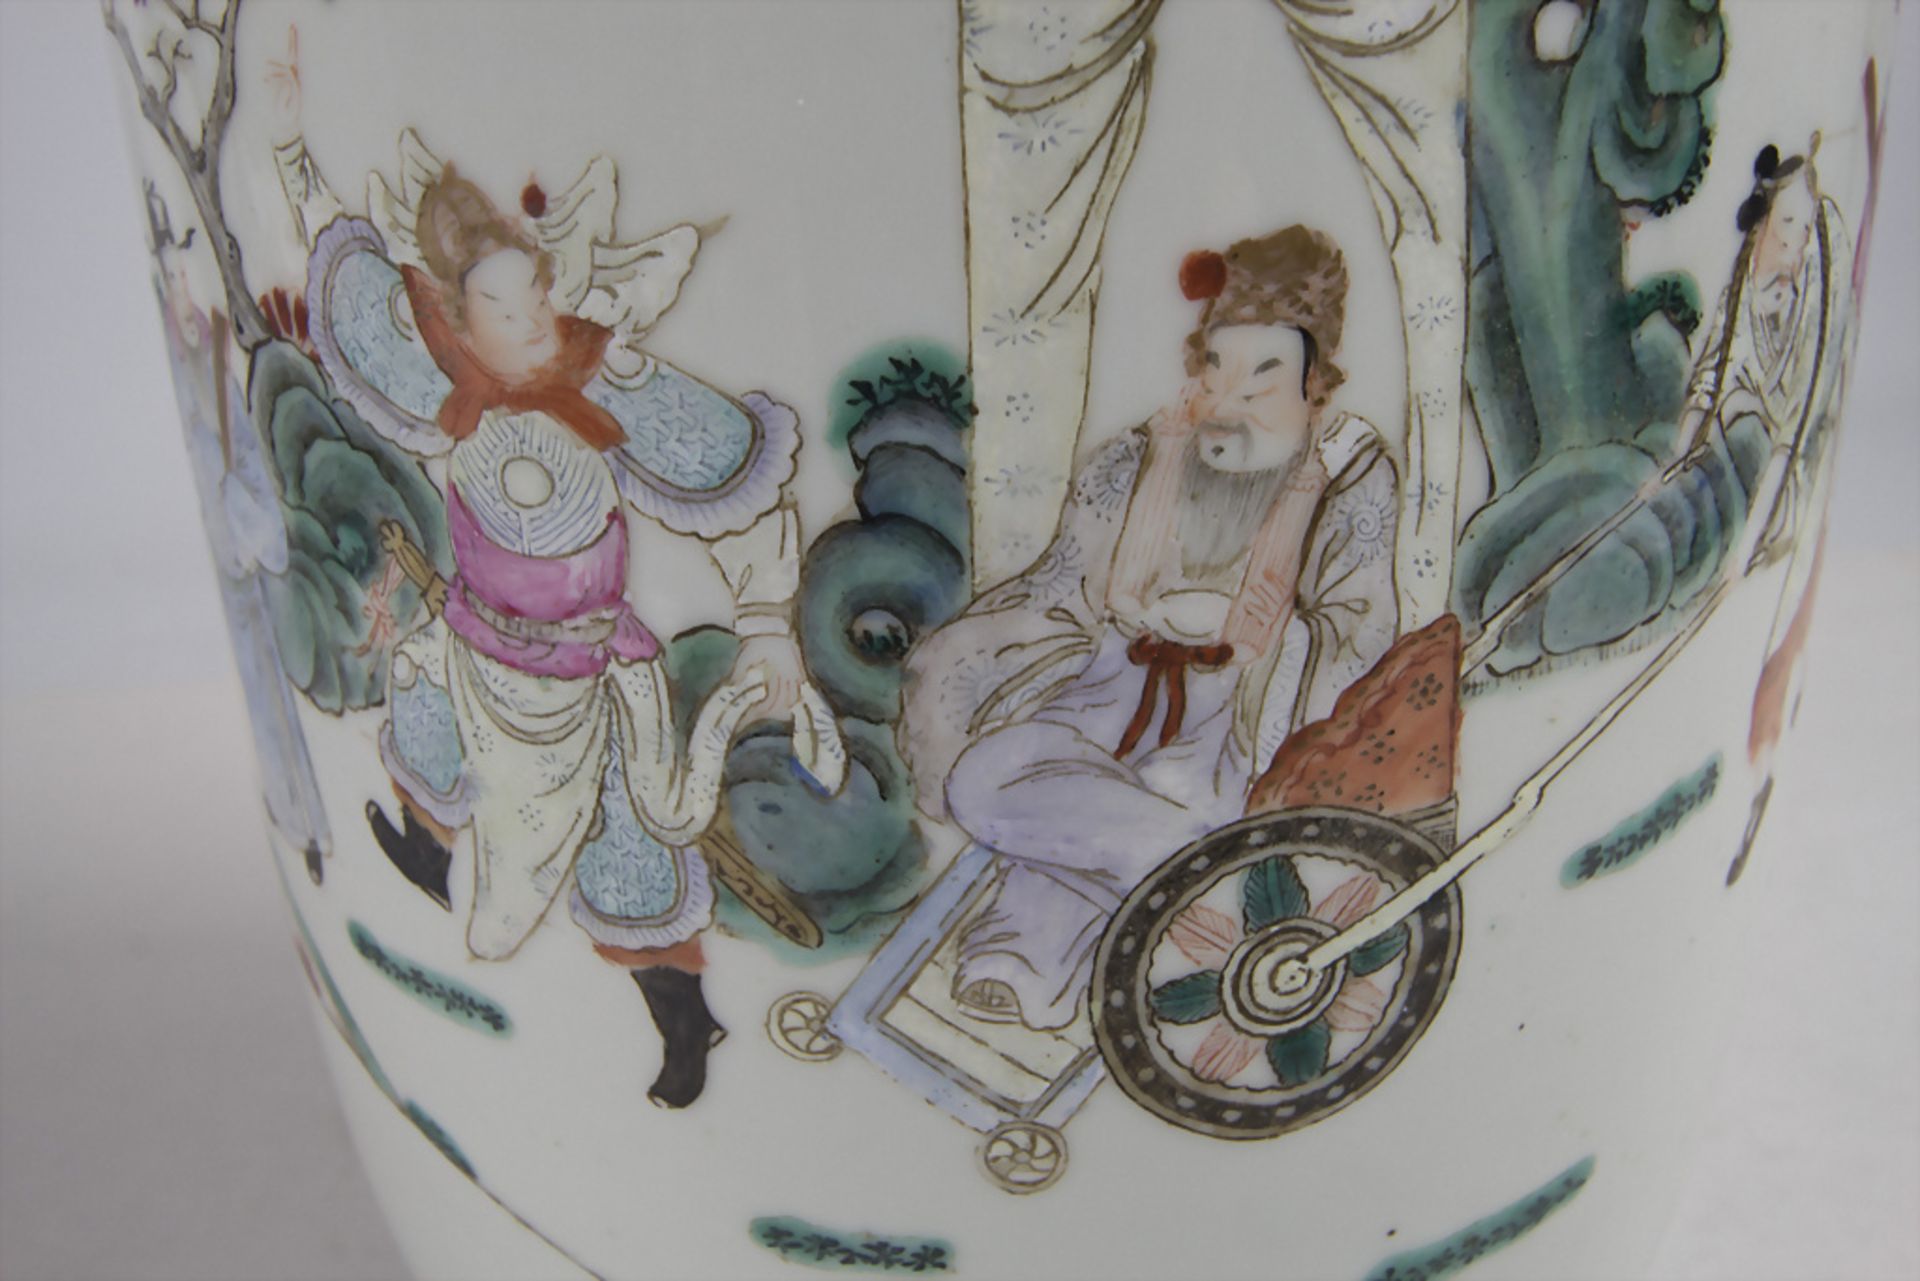 Ziervase / A decorative vase, China, Qing Dynastie (1644-1911), gemarkt Qianlong (1736-1795) - Bild 9 aus 10